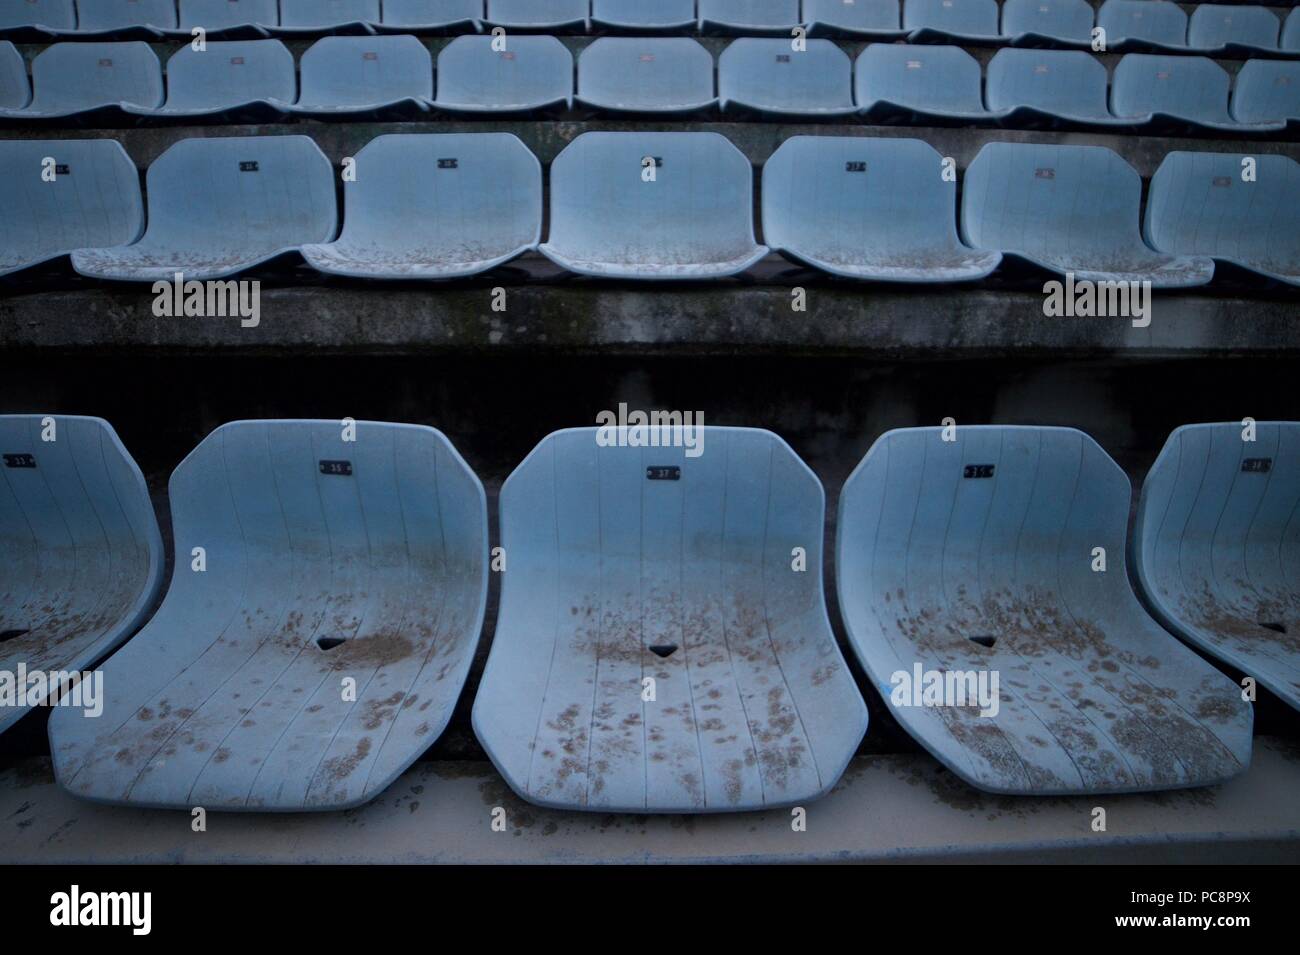 Die Stufen der Stadium Seating innerhalb des verlassenen Stadio Flaminio, einem verlassenen Olympiastadion für Fußball, Rugby und als Veranstaltungsort genutzt. Stockfoto